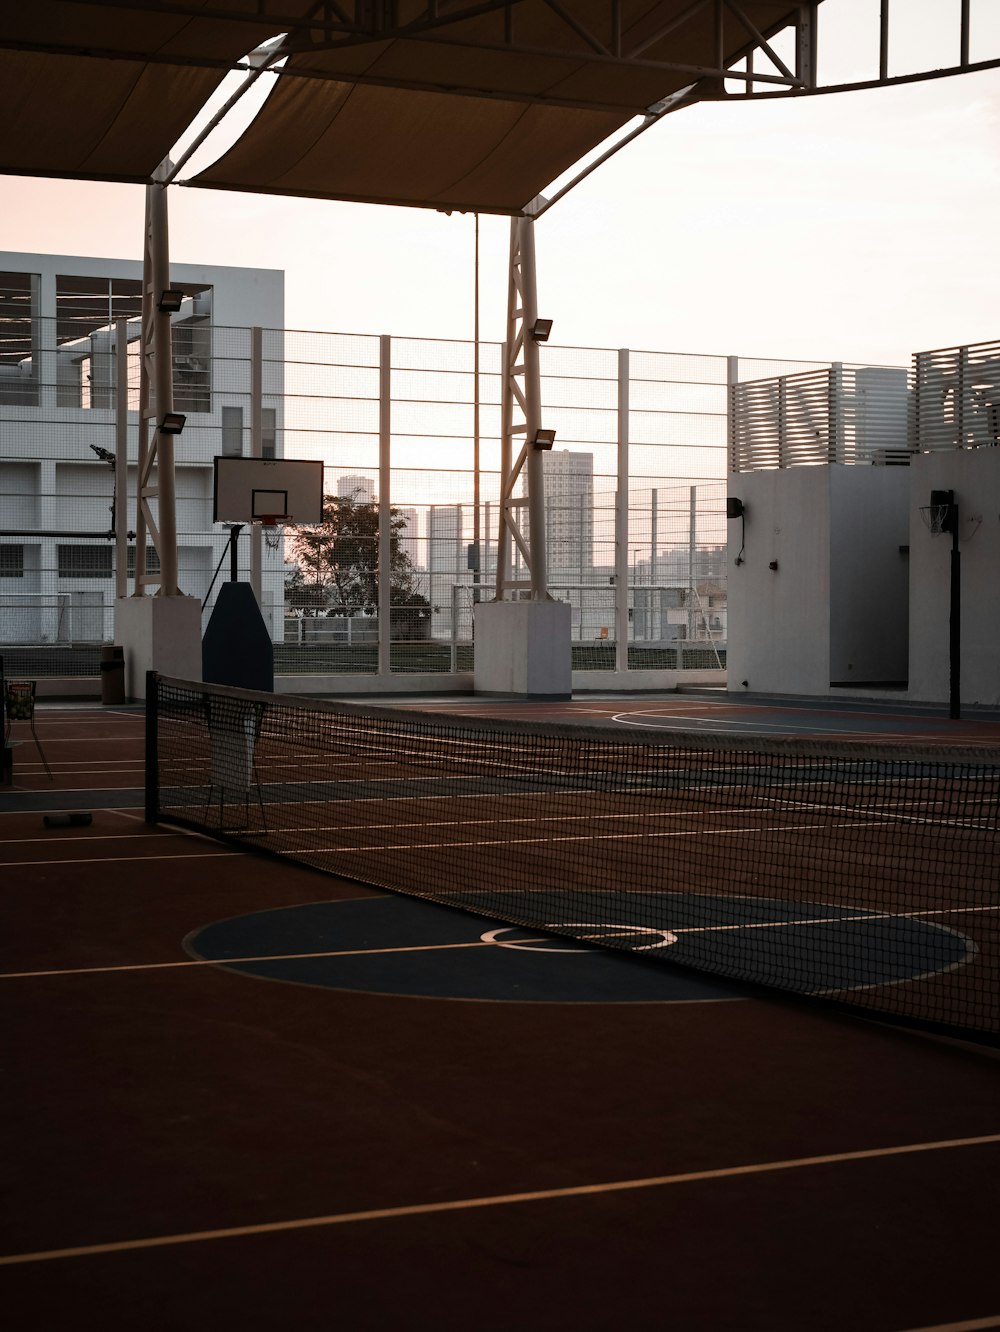 a man standing on a tennis court holding a tennis racquet